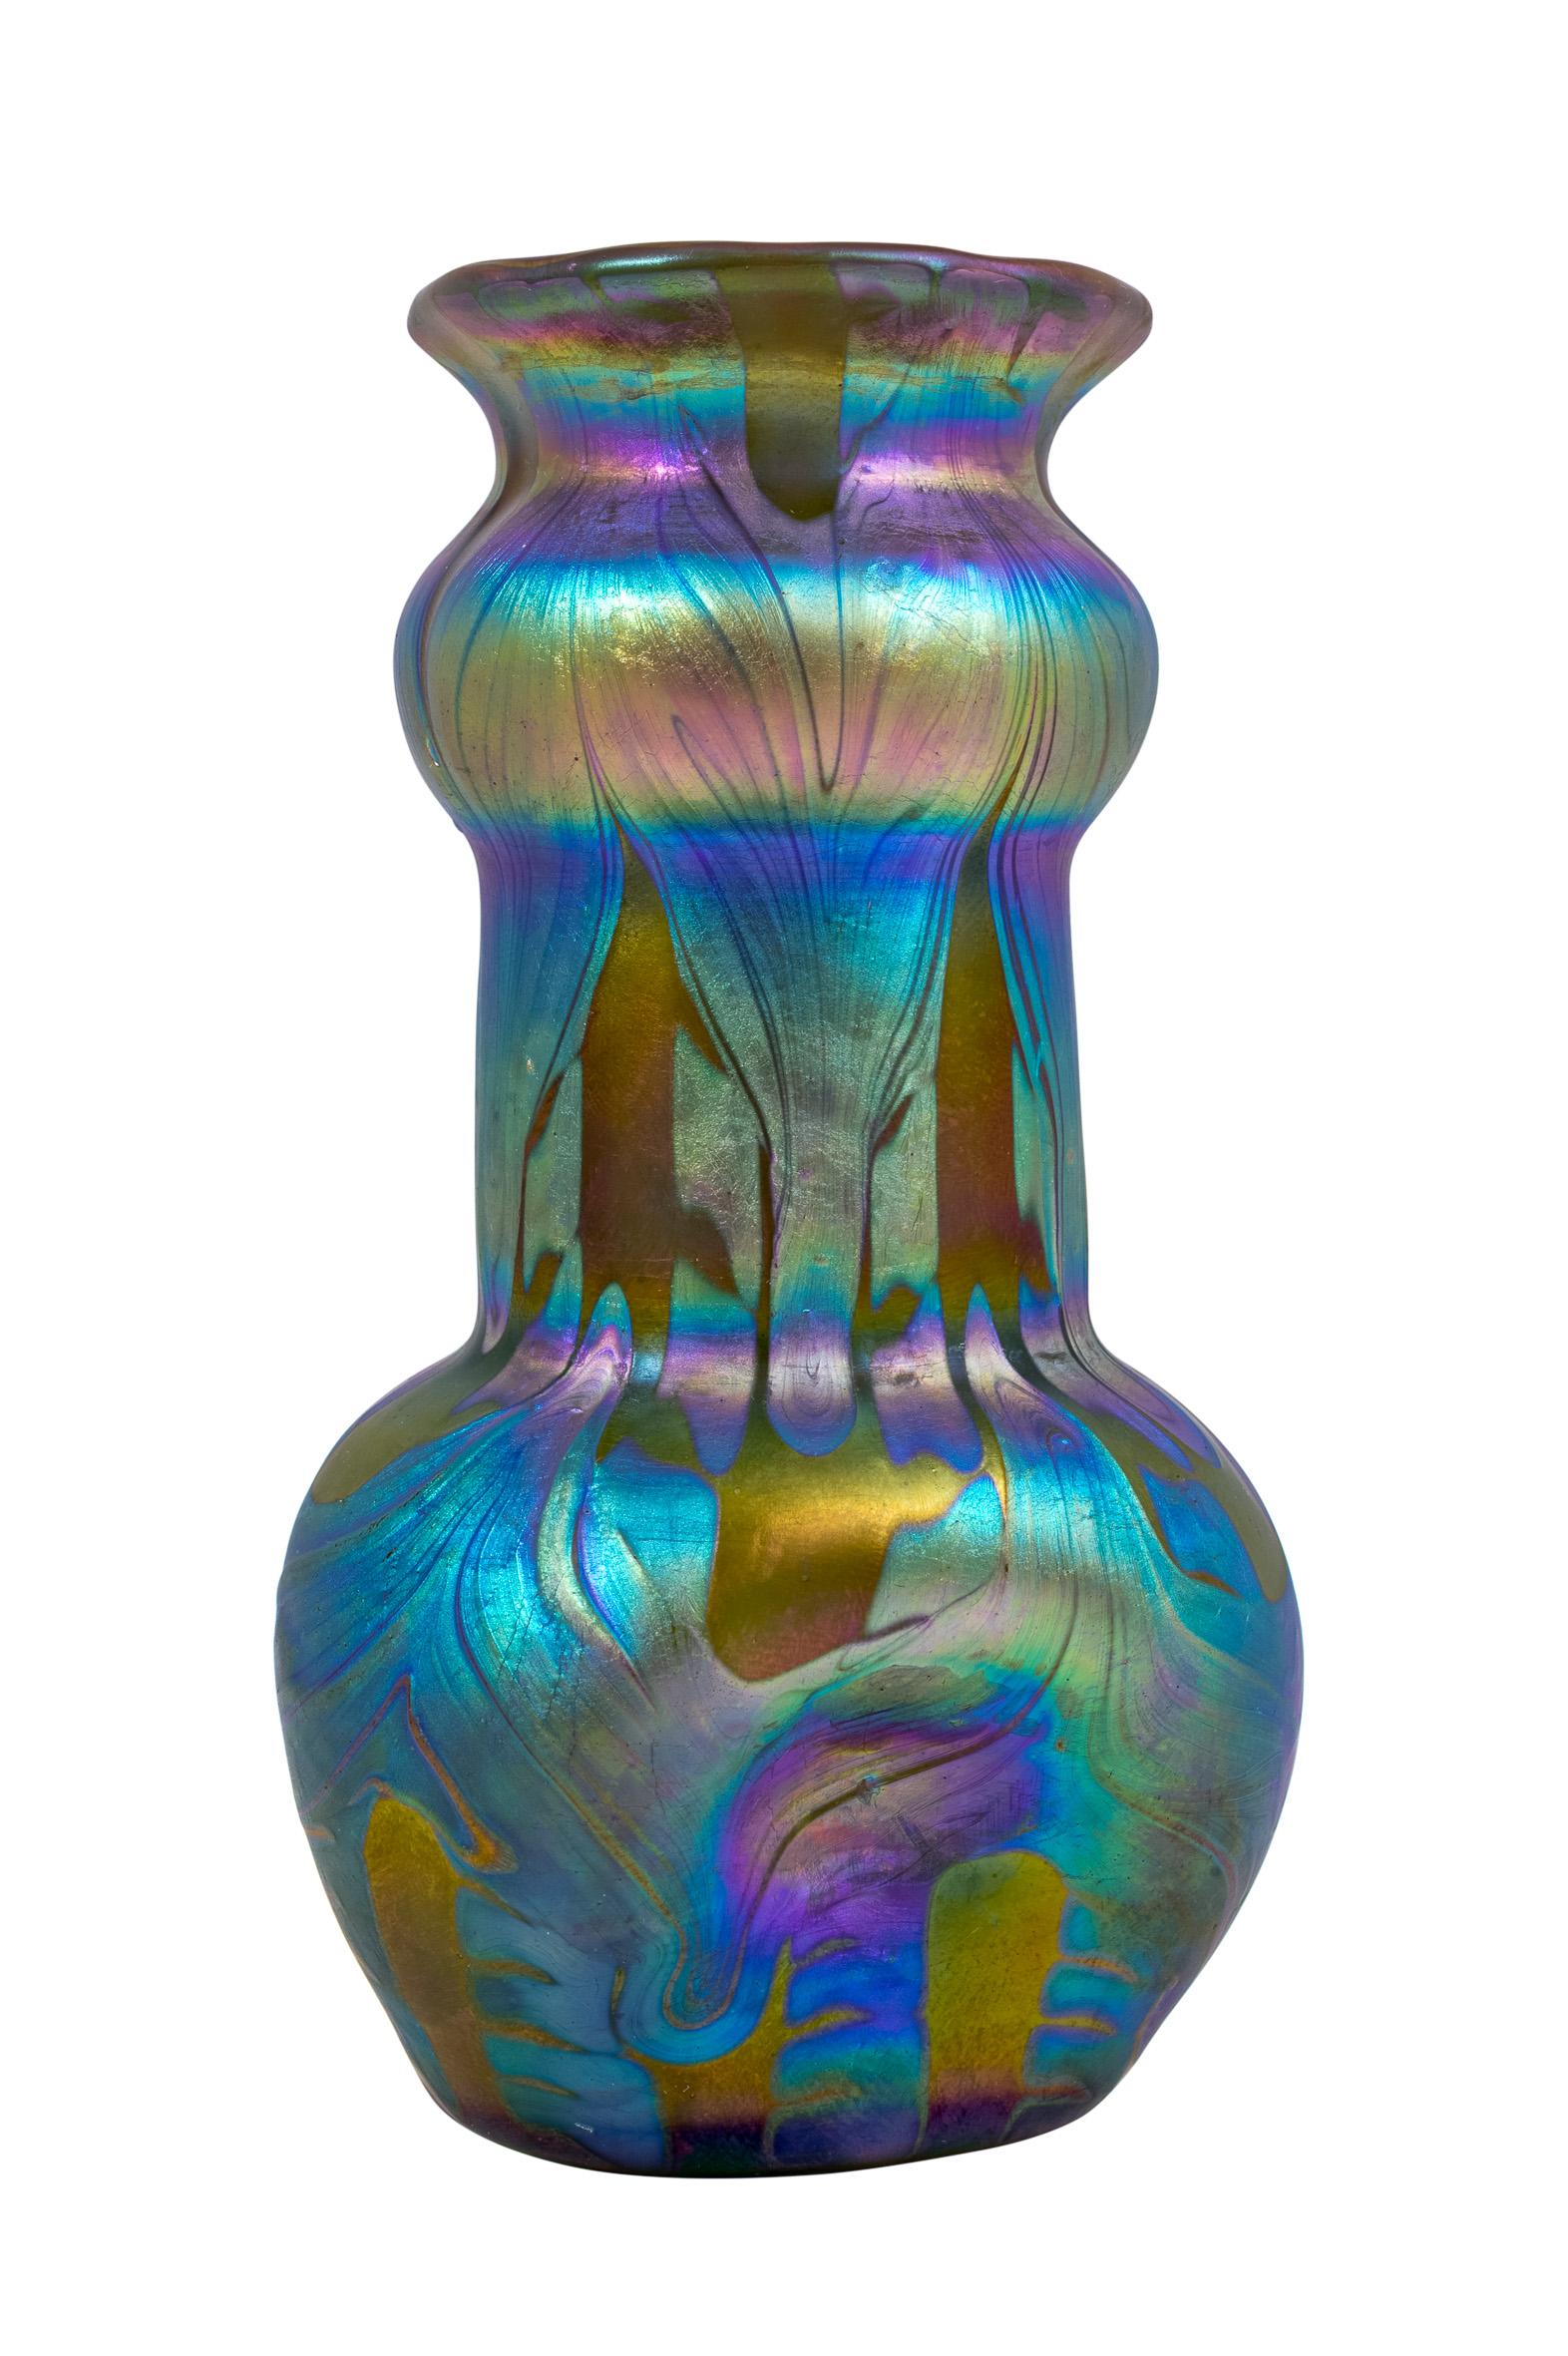 Vase en verre fabriqué par Johann Loetz Witwe PG 1/158 décoration ca. 1901 Jugendstil autrichien

Ce vase est un spécimen exquis et parfaitement conservé, qui illustre le grand art du soufflage du verre du fabricant Loetz. La décoration de la